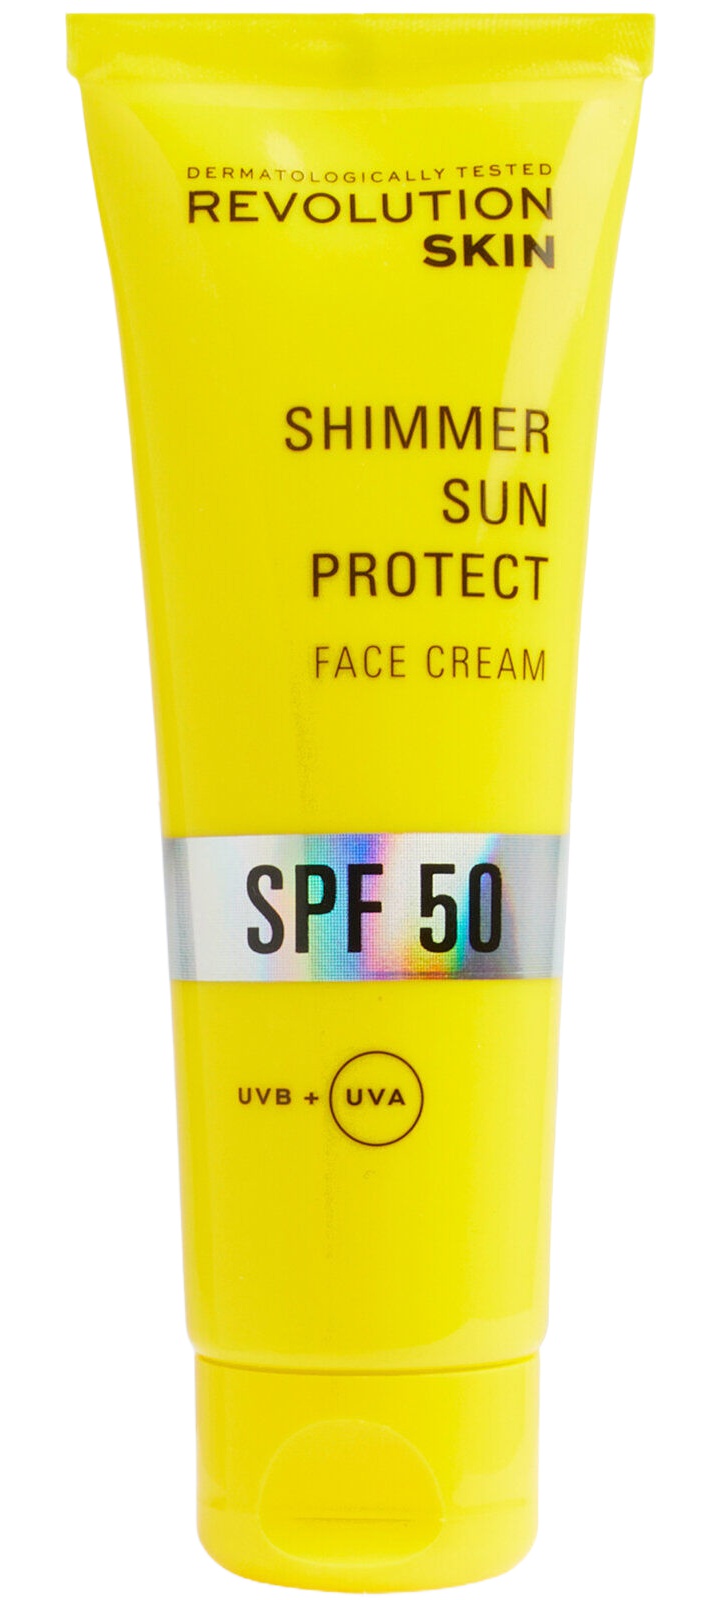 Revolution Skin Shimmer Sun Protect Face Cream SPF 50